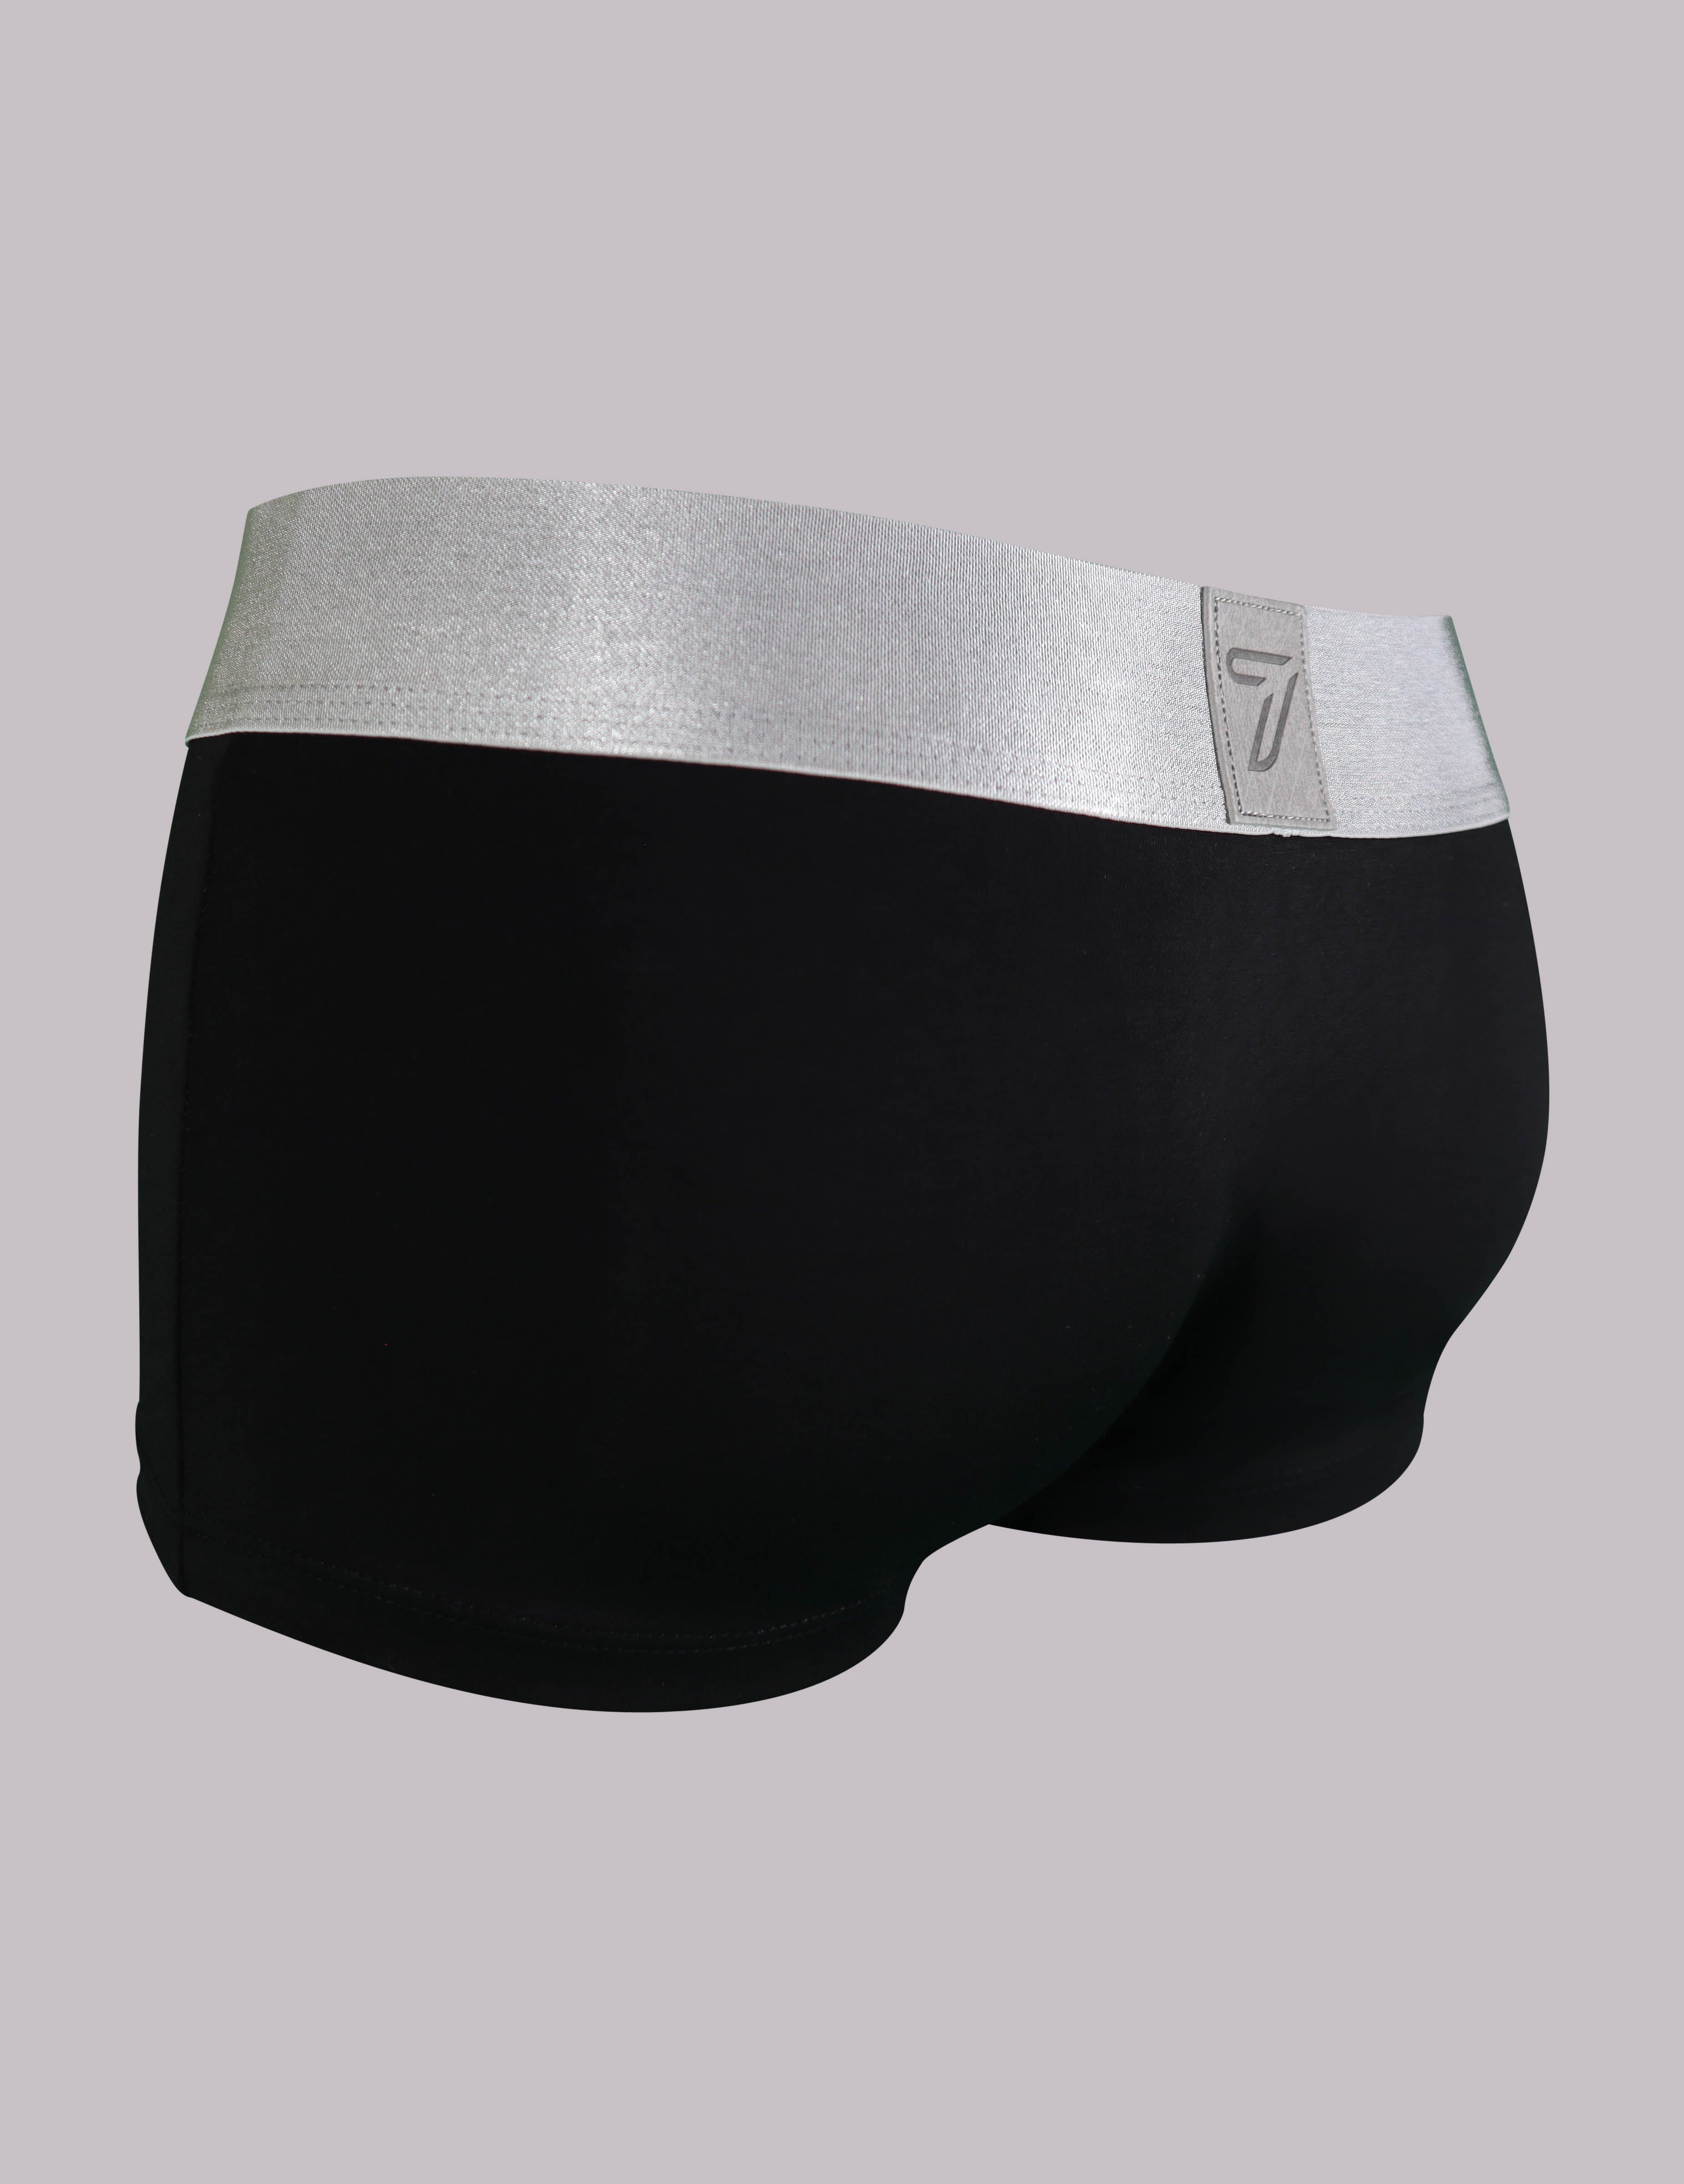 mens underwear briefs in black